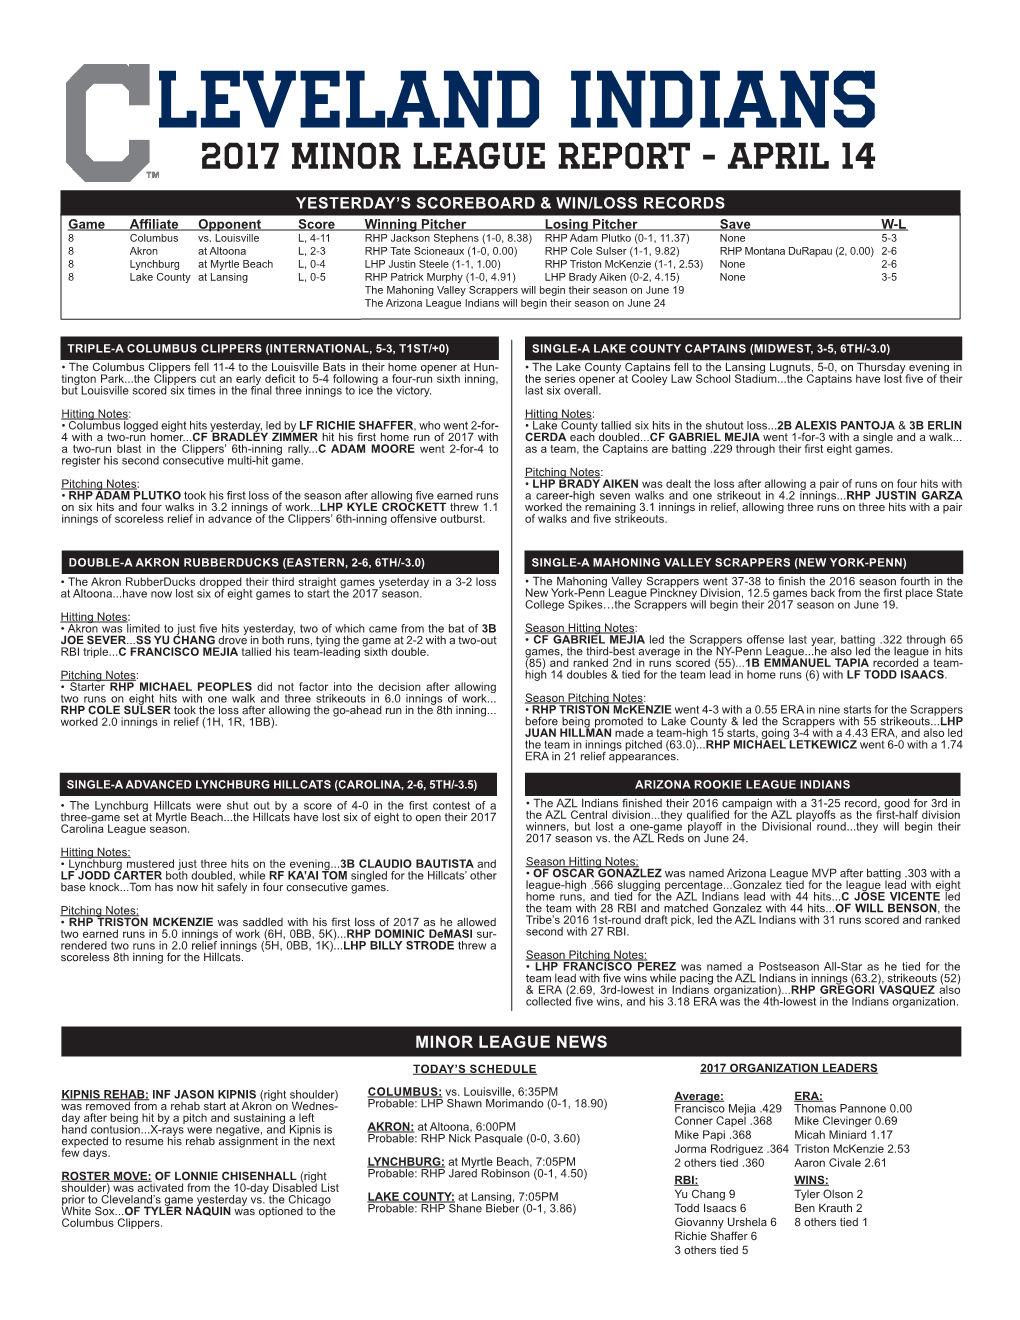 Leveland Indians 2017 Minor League Report - April 14